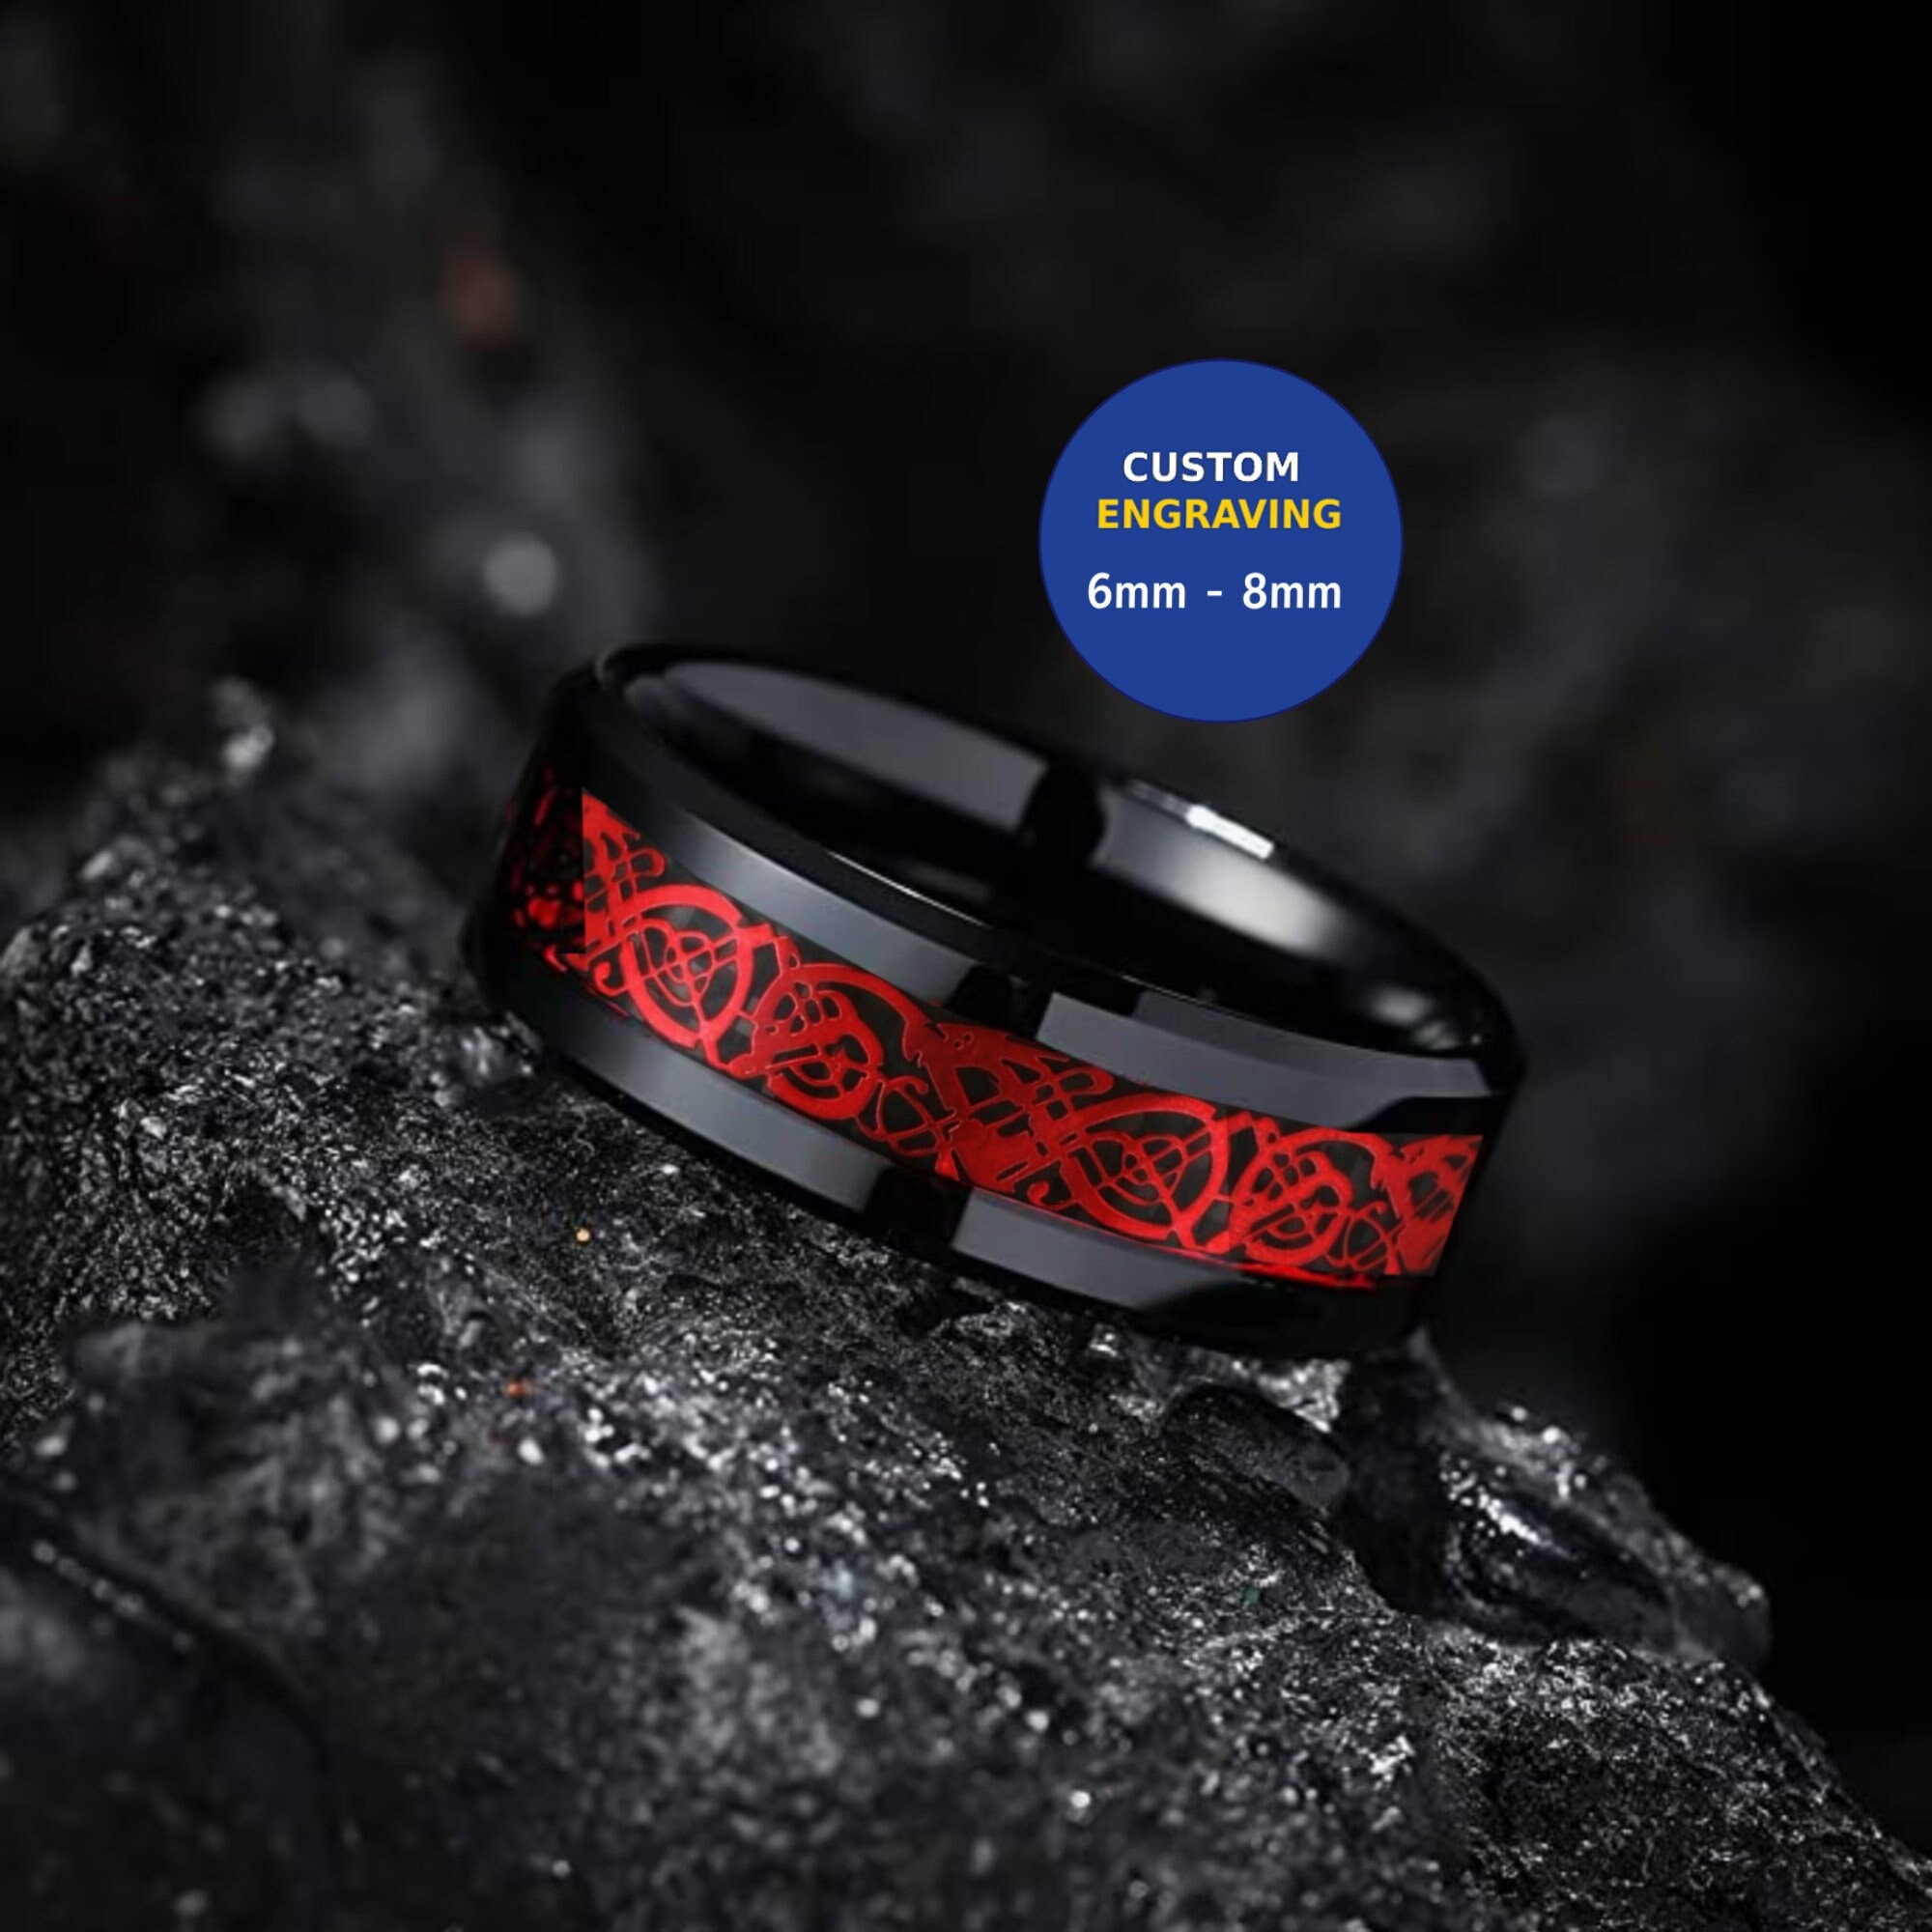 Dalton Pink Carbon Fiber Inlaid Titanium Men’s Wedding Ring Beveled Edges 8mm 10 / Titanium